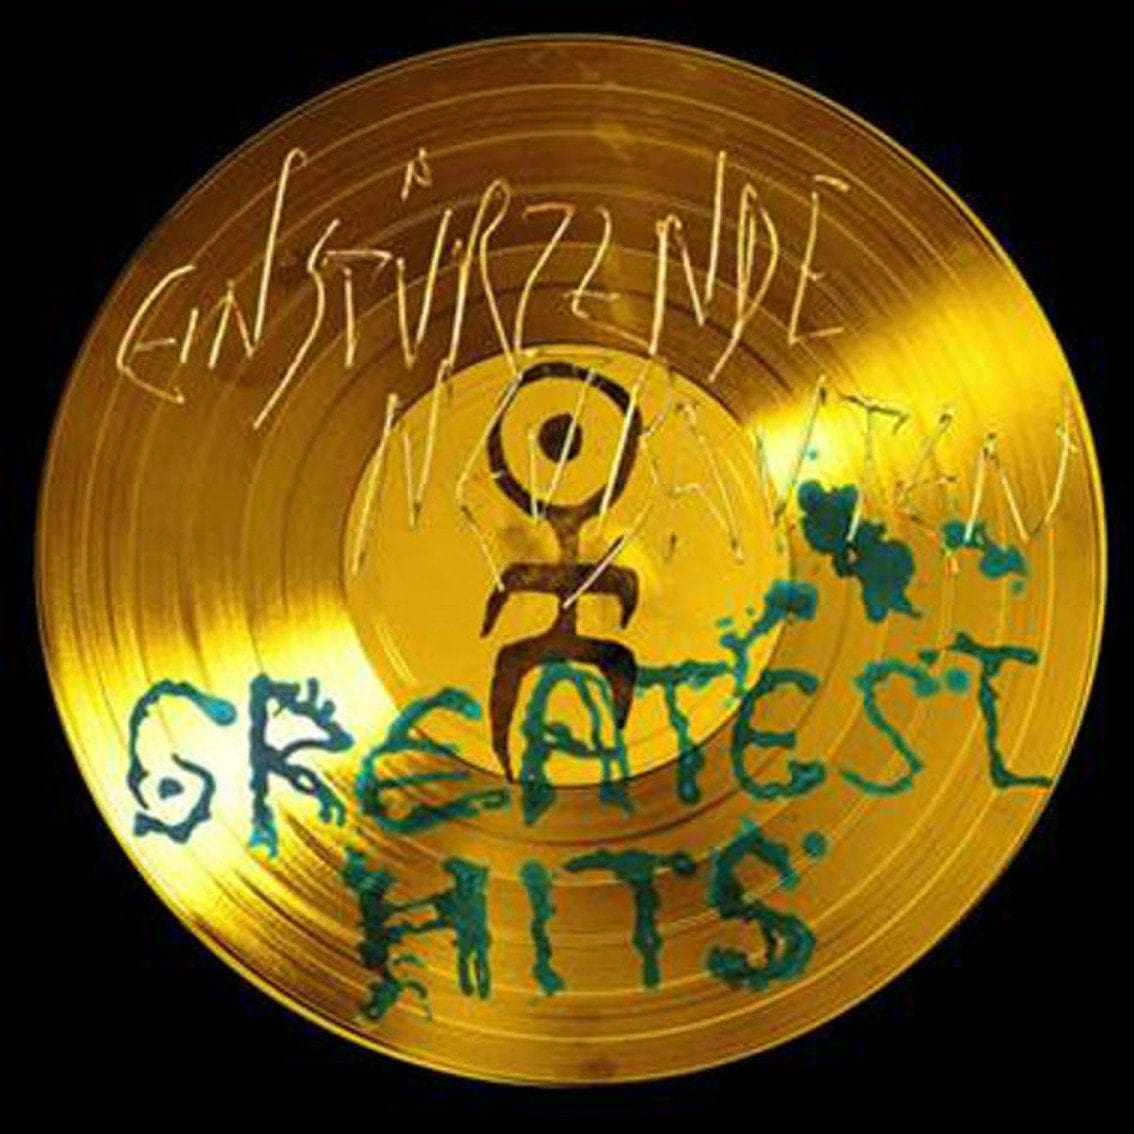 Einstürzende Neubauten goes gold vinyl with 'Greatest Hits' - get yours here